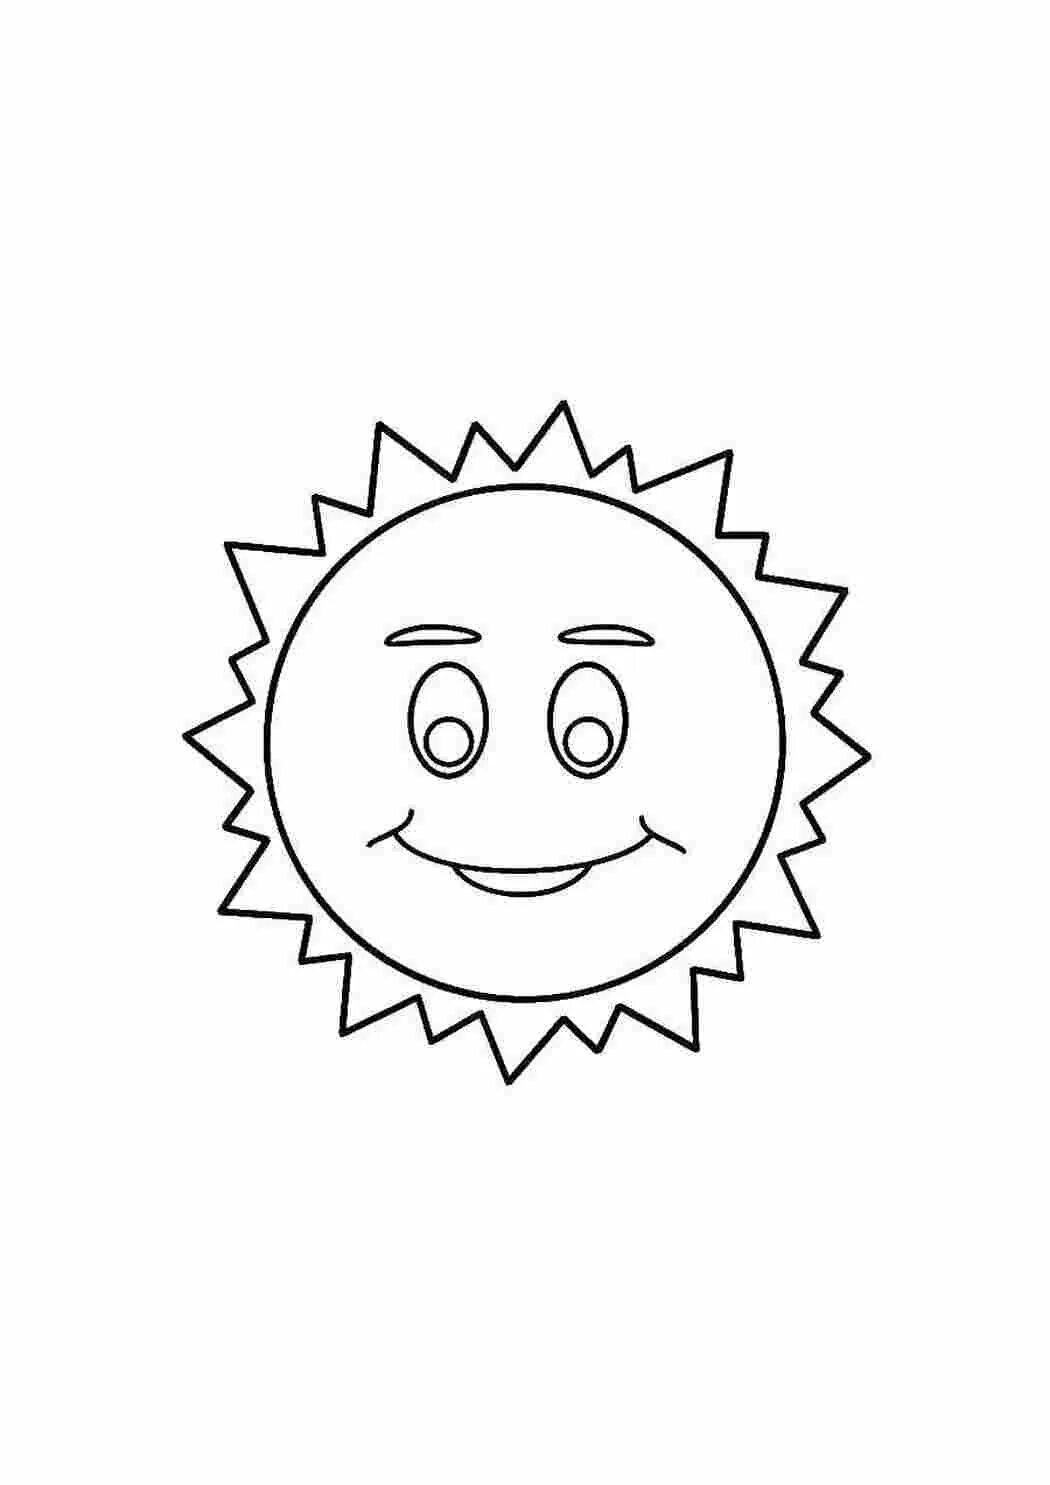 Солнышко шаблон для детей. Раскраска. Солнышко. Солнце без лучиков раскраска. Солнышко раскраска для детей без лучиков.